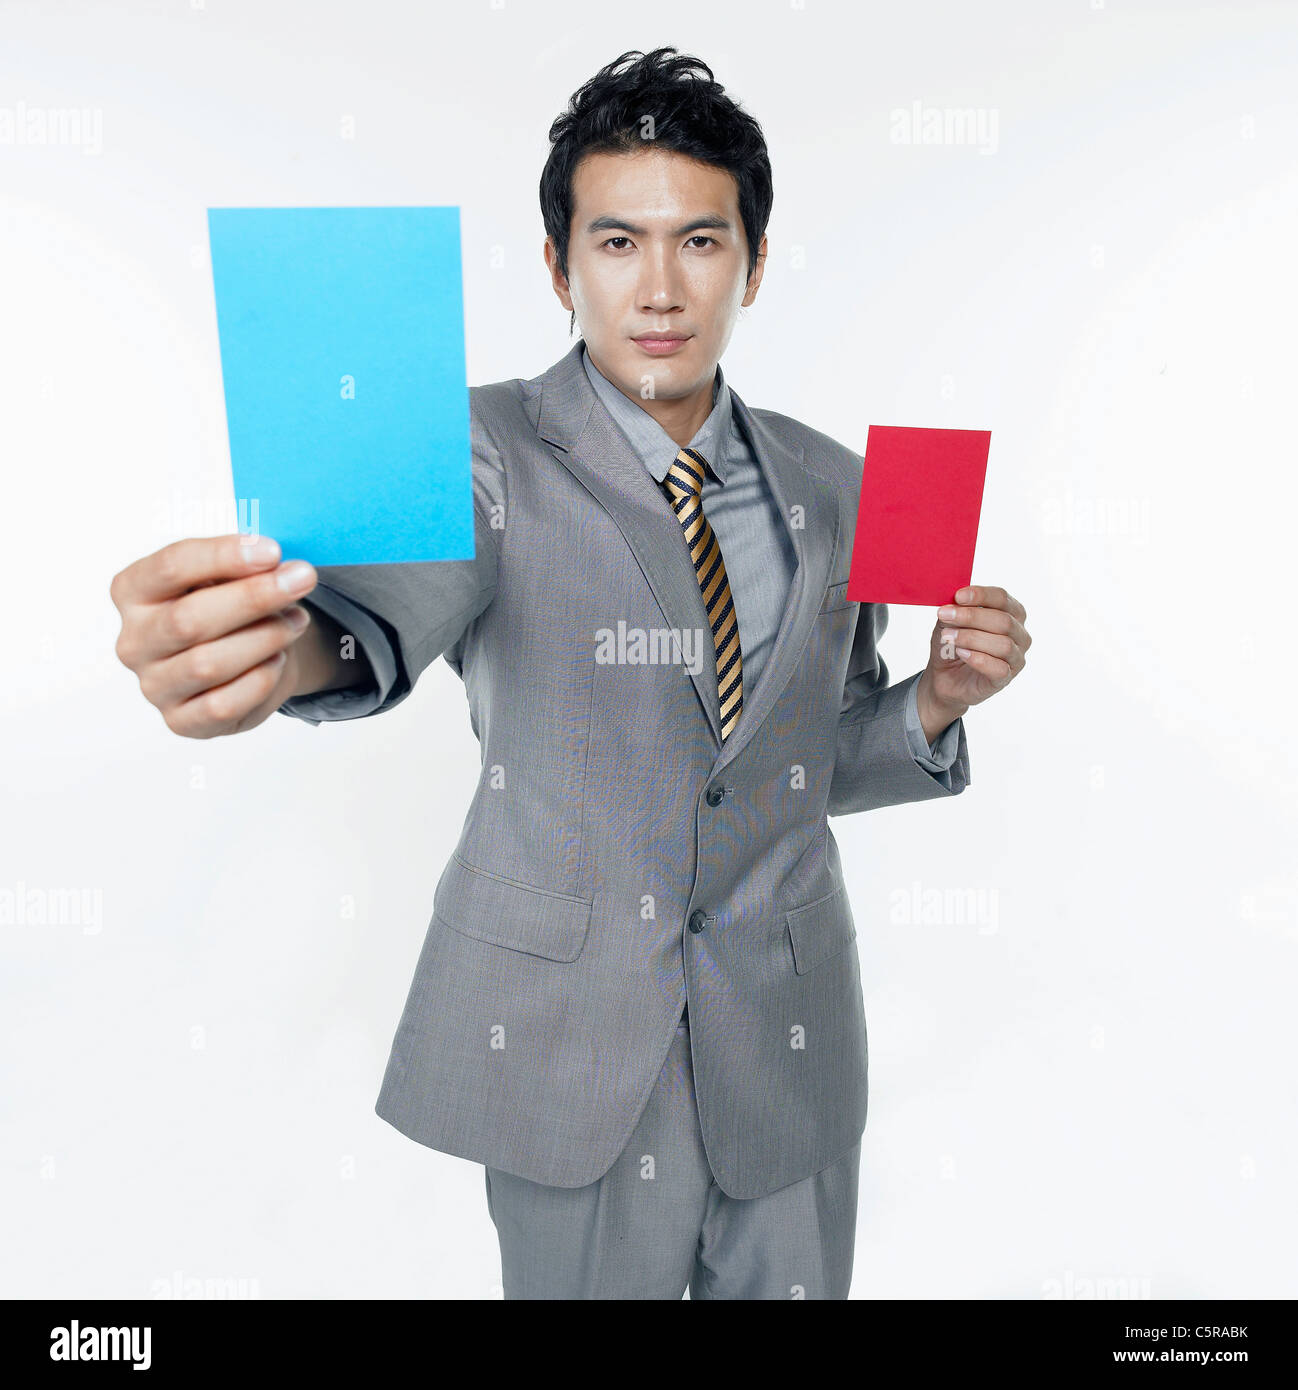 Un homme tenant une carte rouge et une carte bleu Banque D'Images